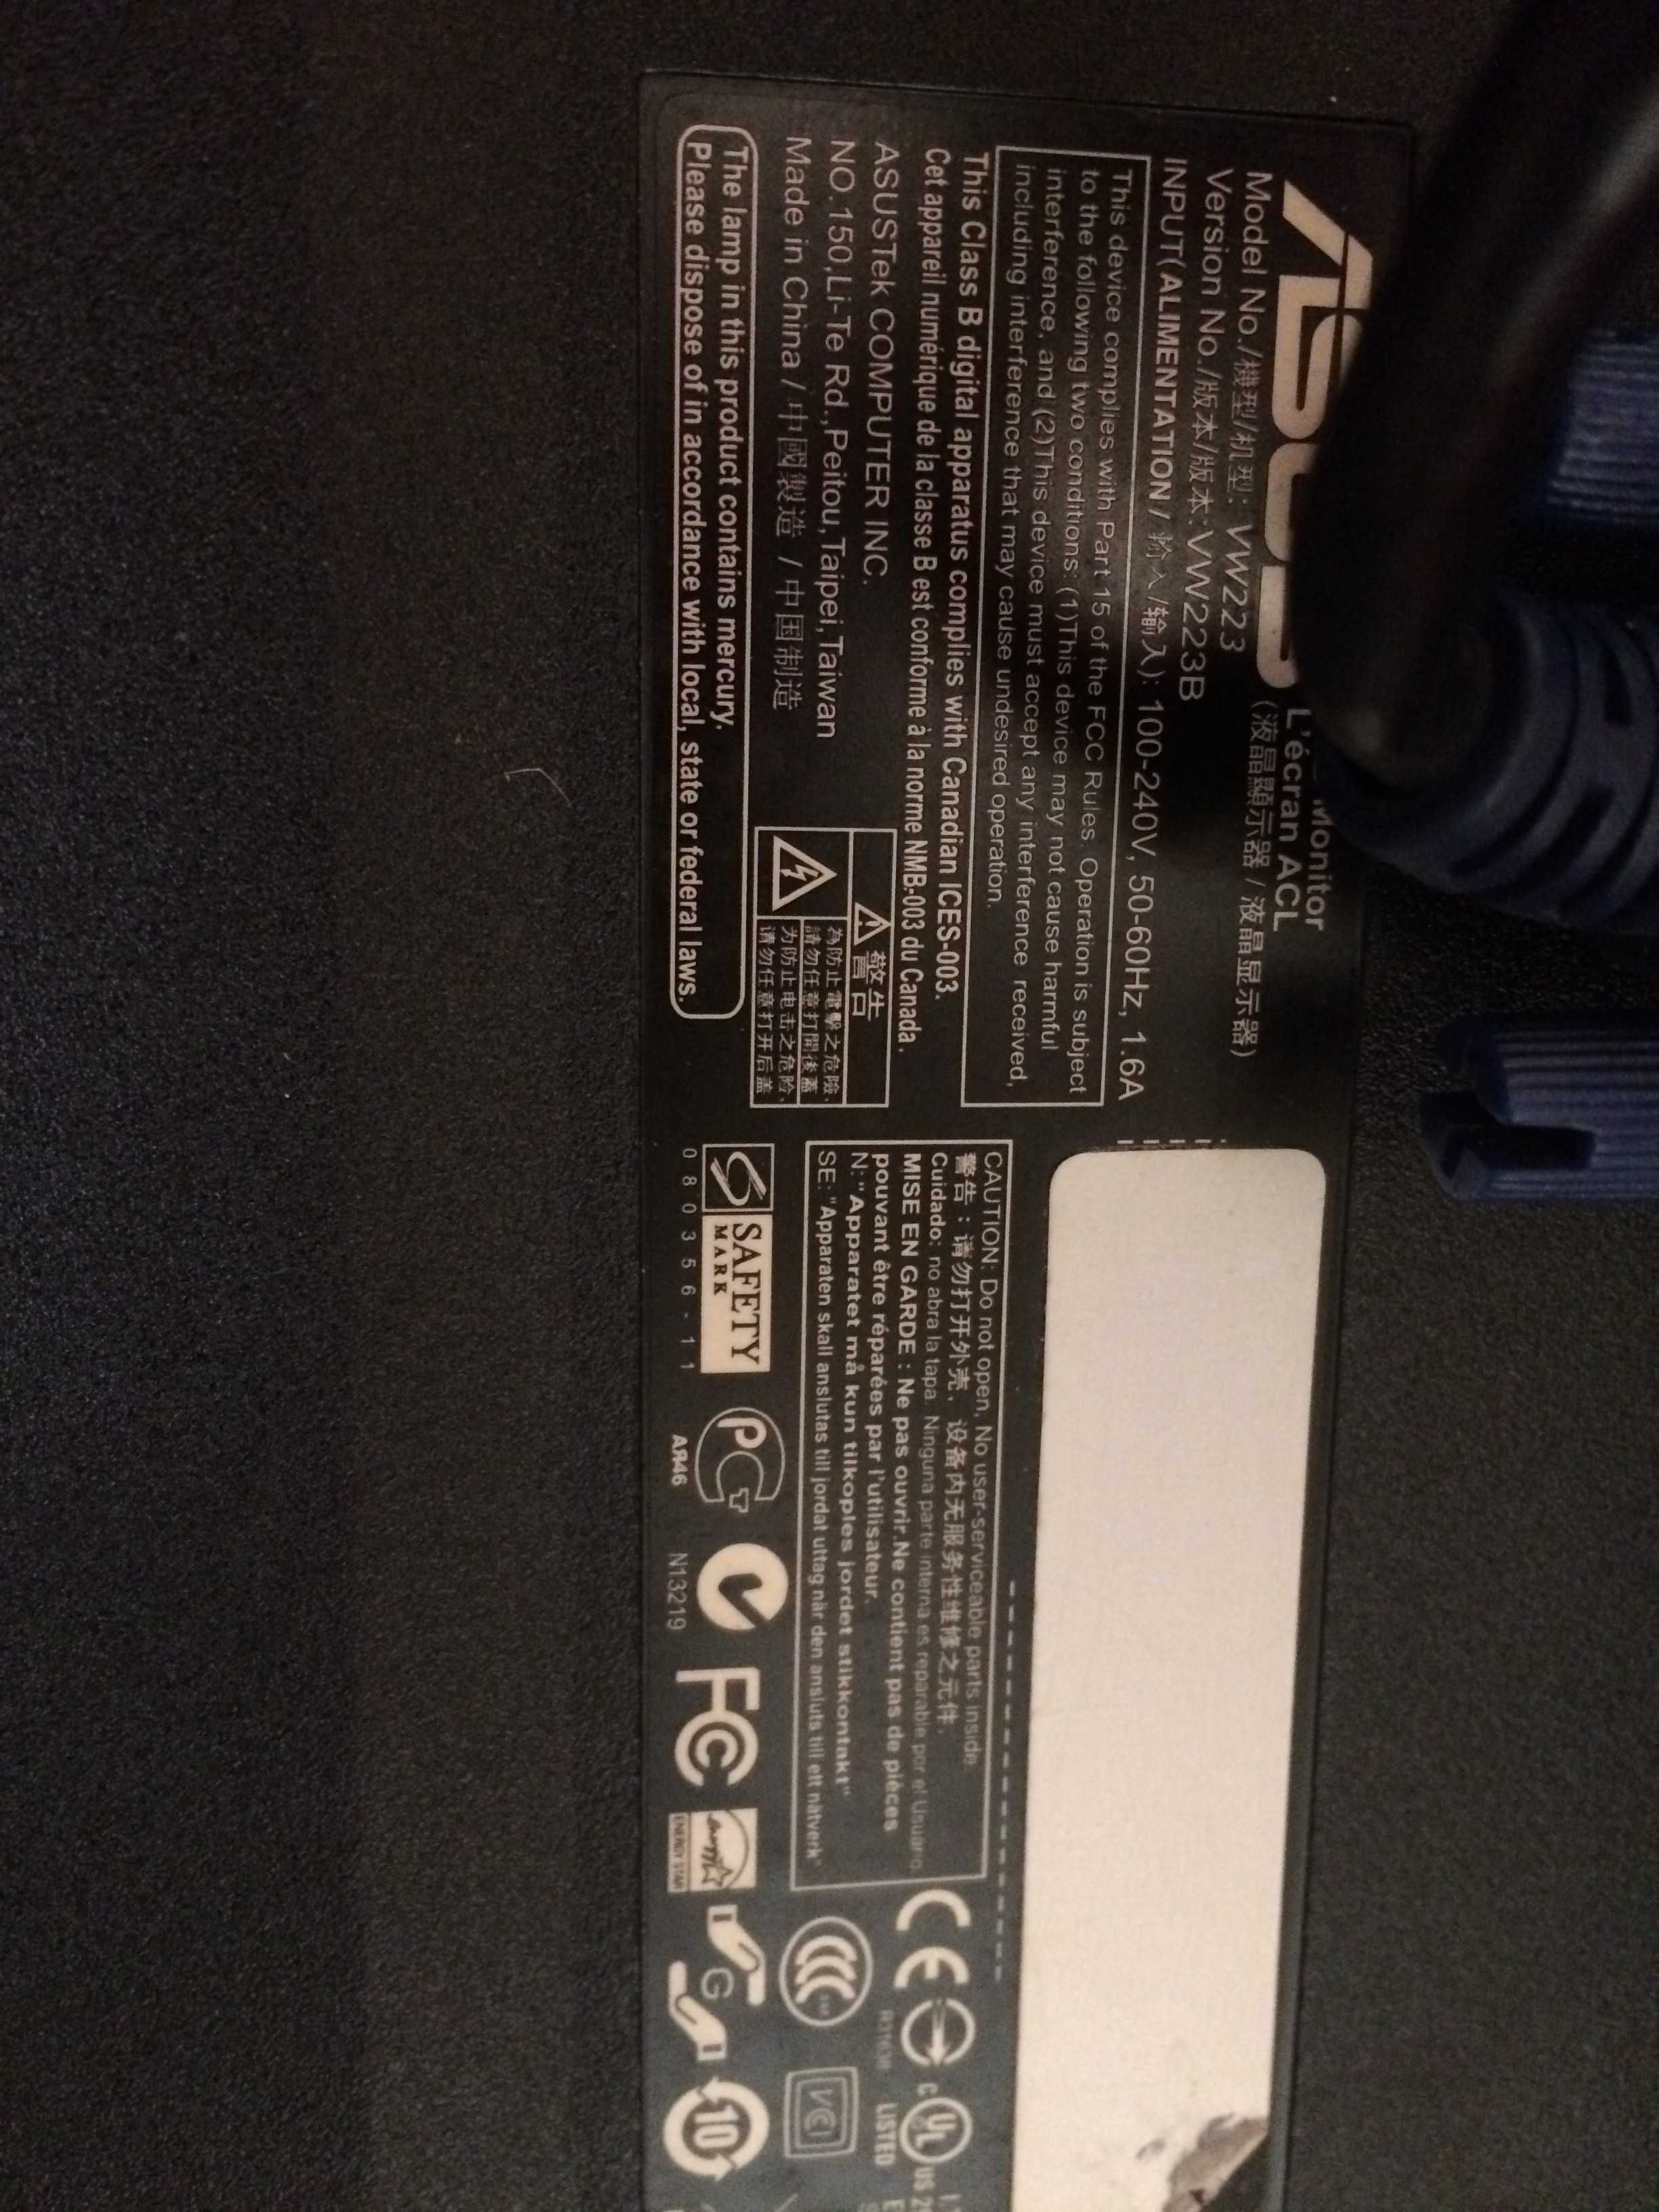 Monitor Asus Modelo VW223B com cabo (preço não negociável)
50 €